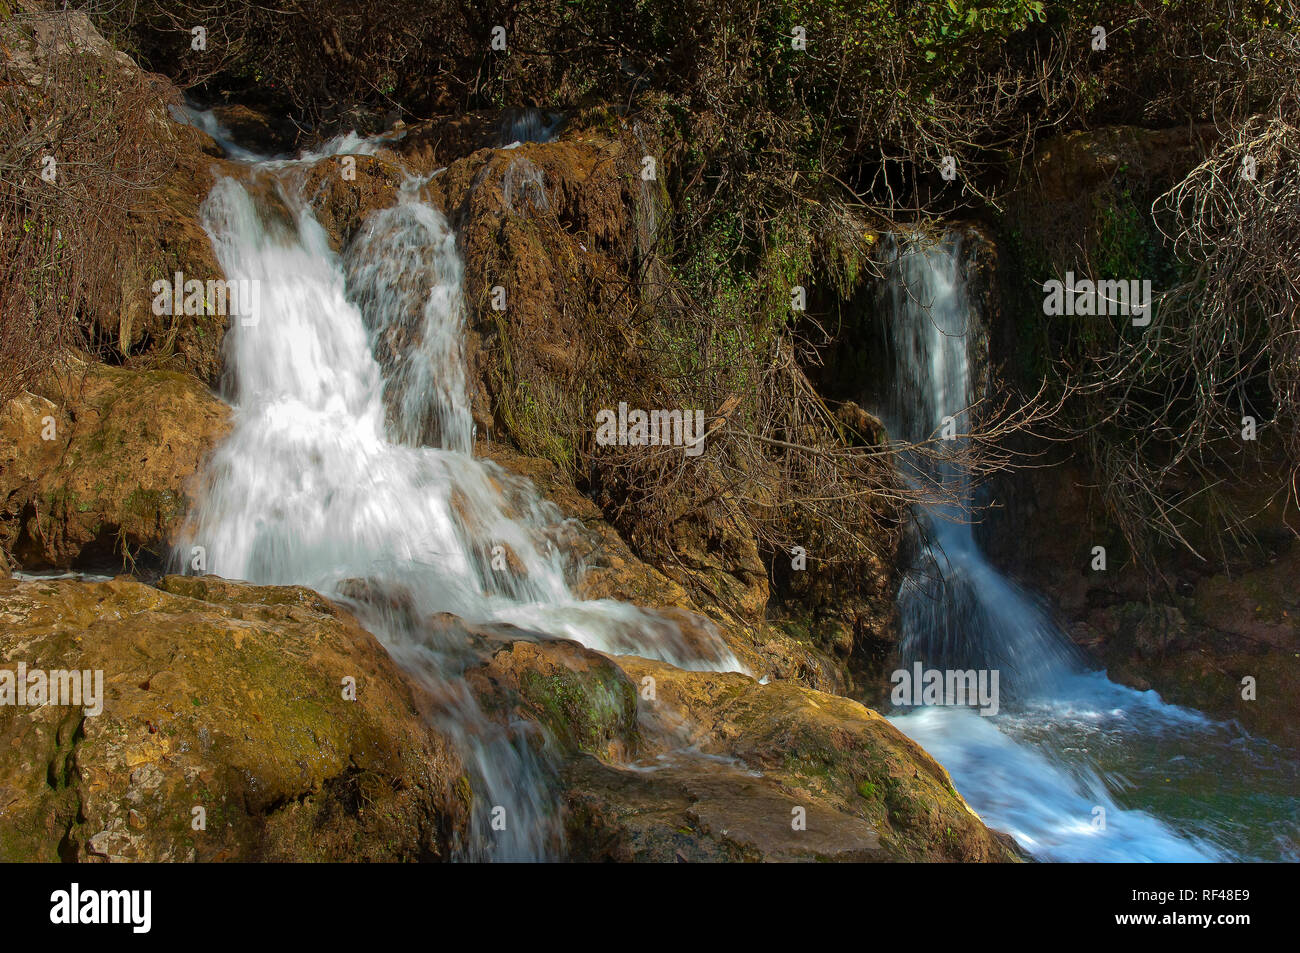 Rivière Hueznar cascades. Le Parc Naturel de la Sierra Norte. Province de Séville. Région de l'Andalousie. L'Espagne. L'Europe Banque D'Images